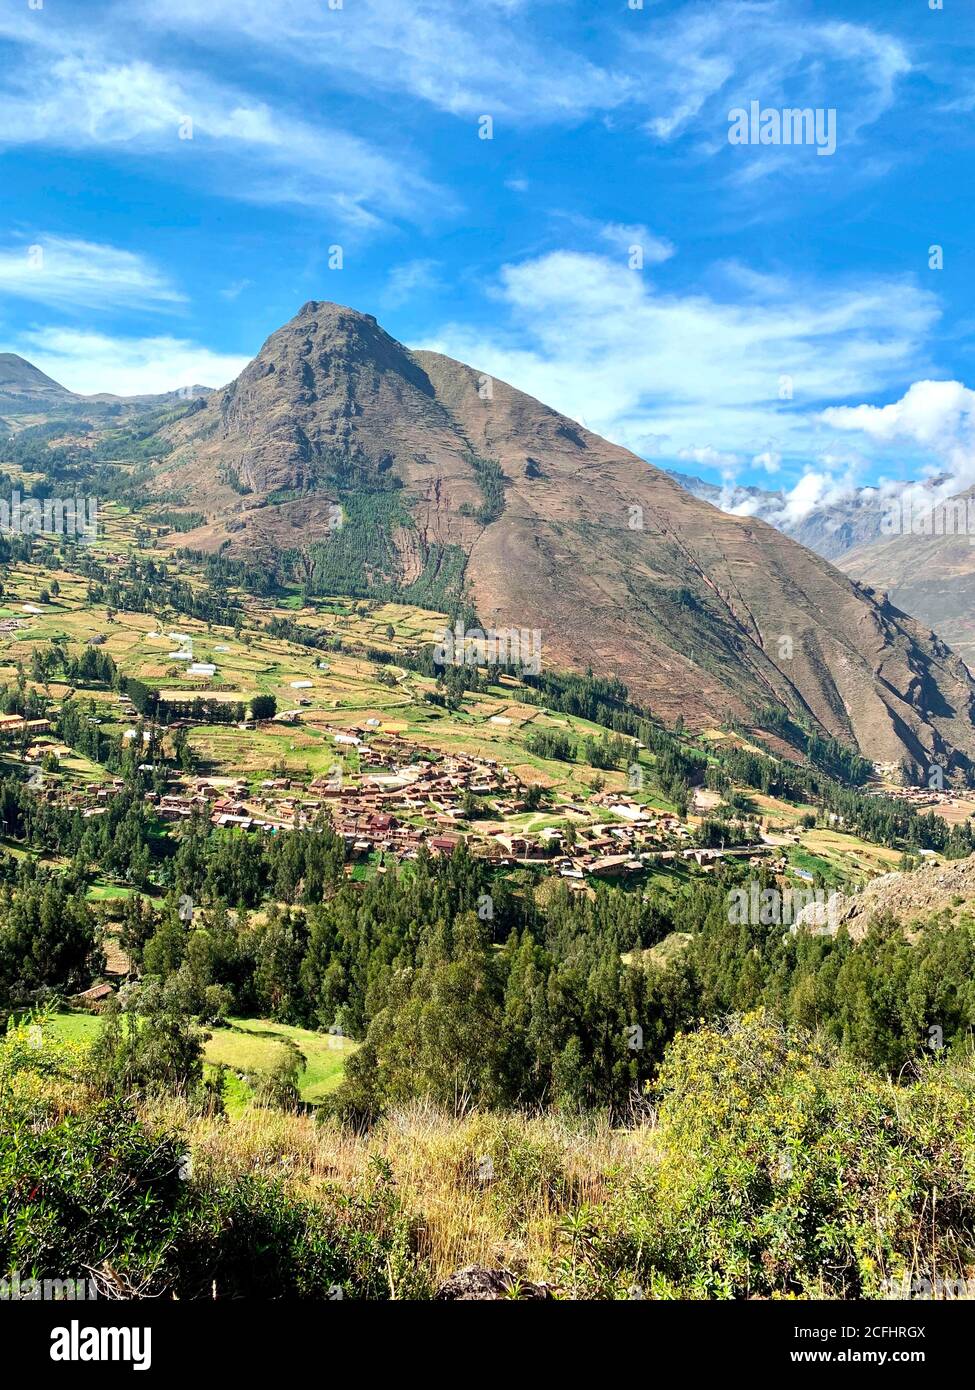 Vallée sacrée des Incas. Montagnes pittoresques des Andes. La vallée de Urubamba est le berceau de la civilisation incan. Vert été nature au Pérou. Terre rurale paisible Banque D'Images